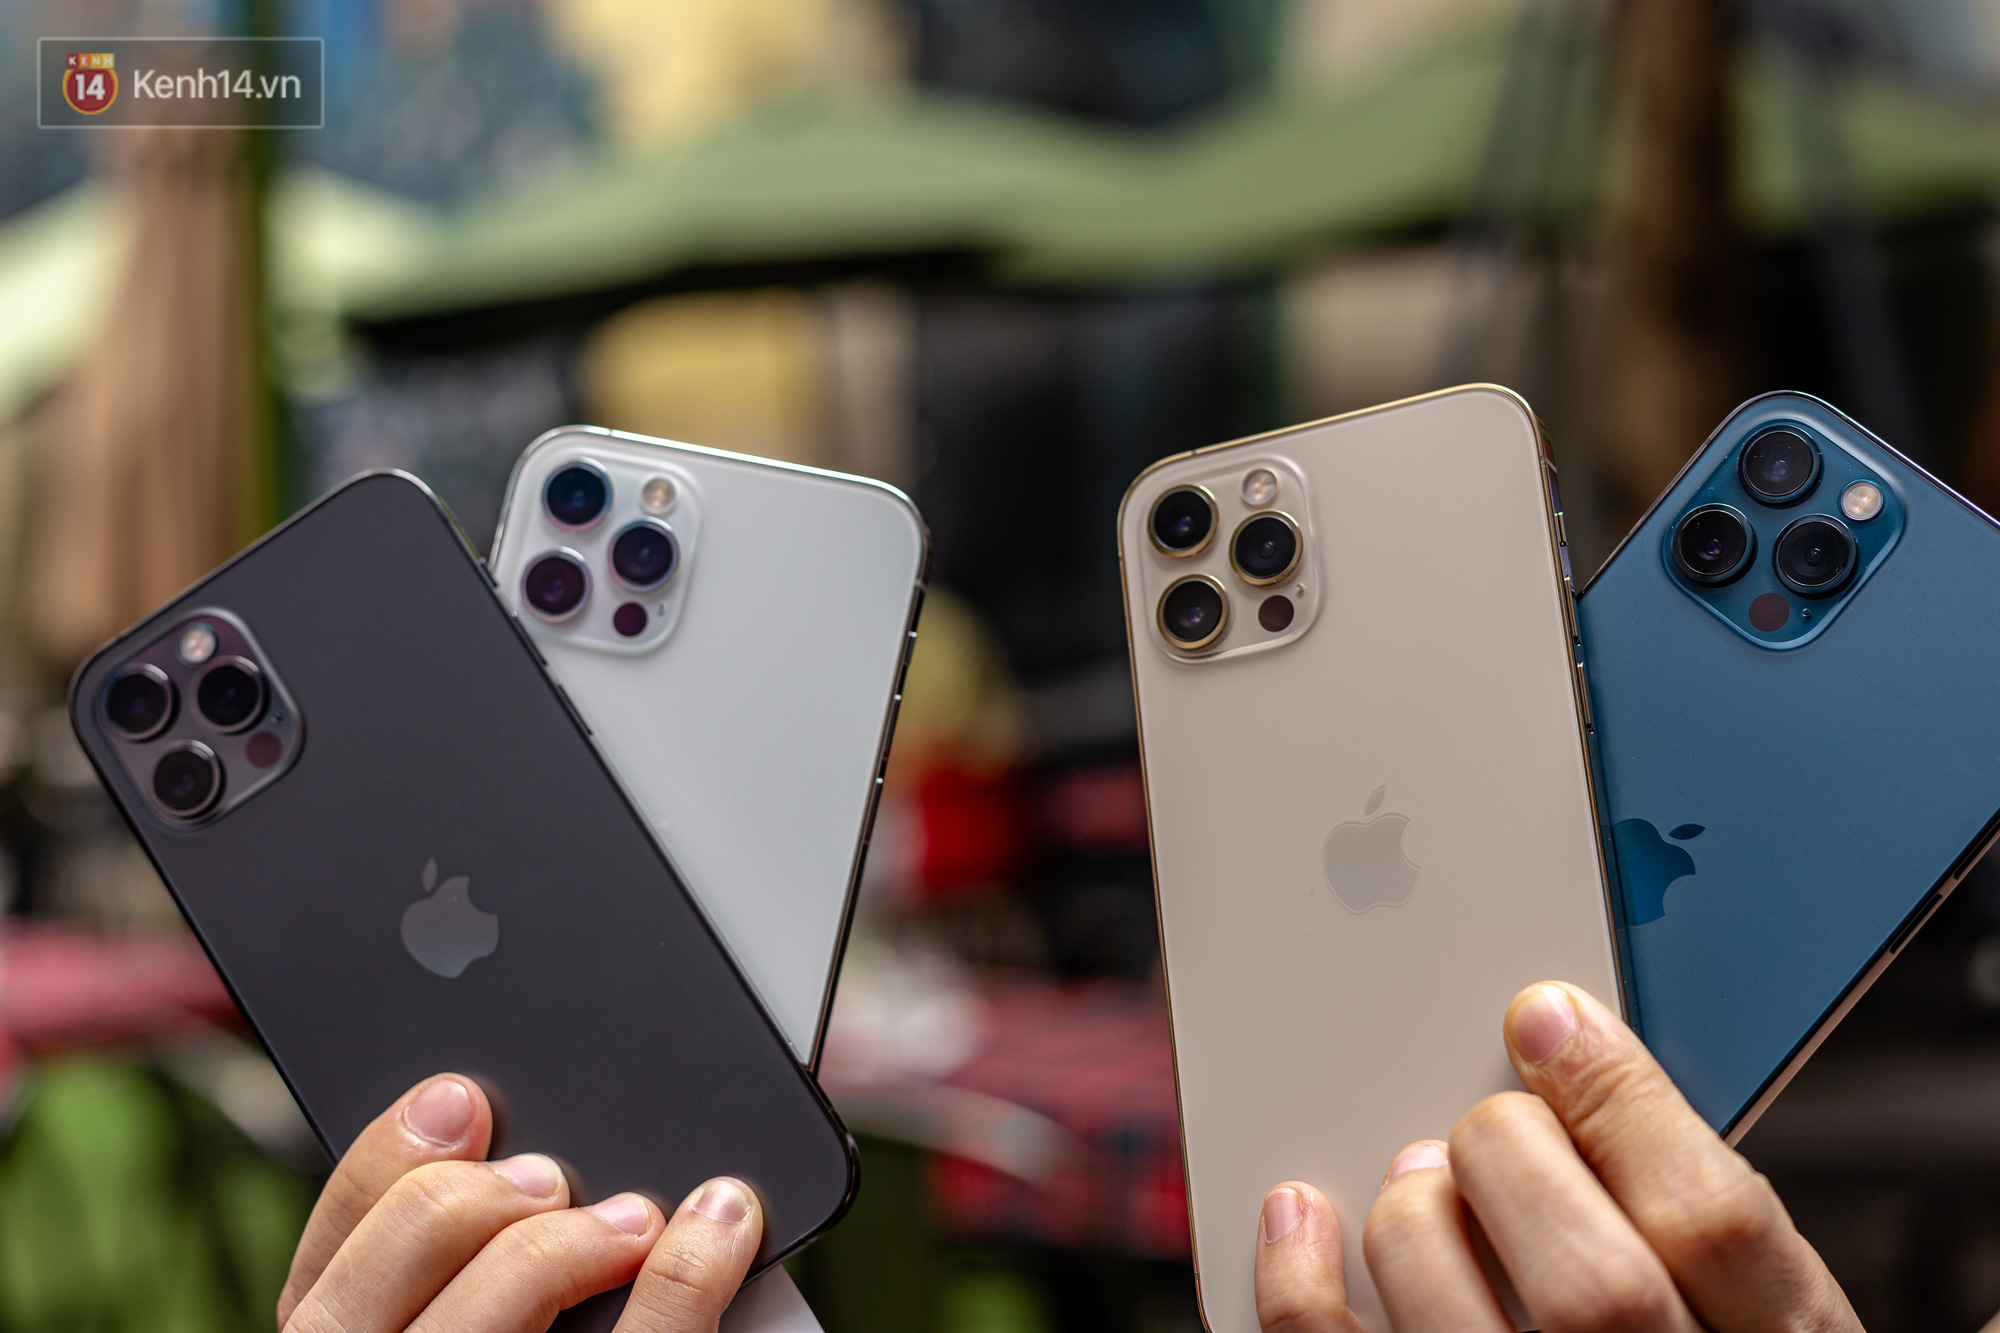 Đập hộp Liệu iPhone 12 màu xanh navy có đẹp NHƯ LỜI ĐỒN  Công nghệ